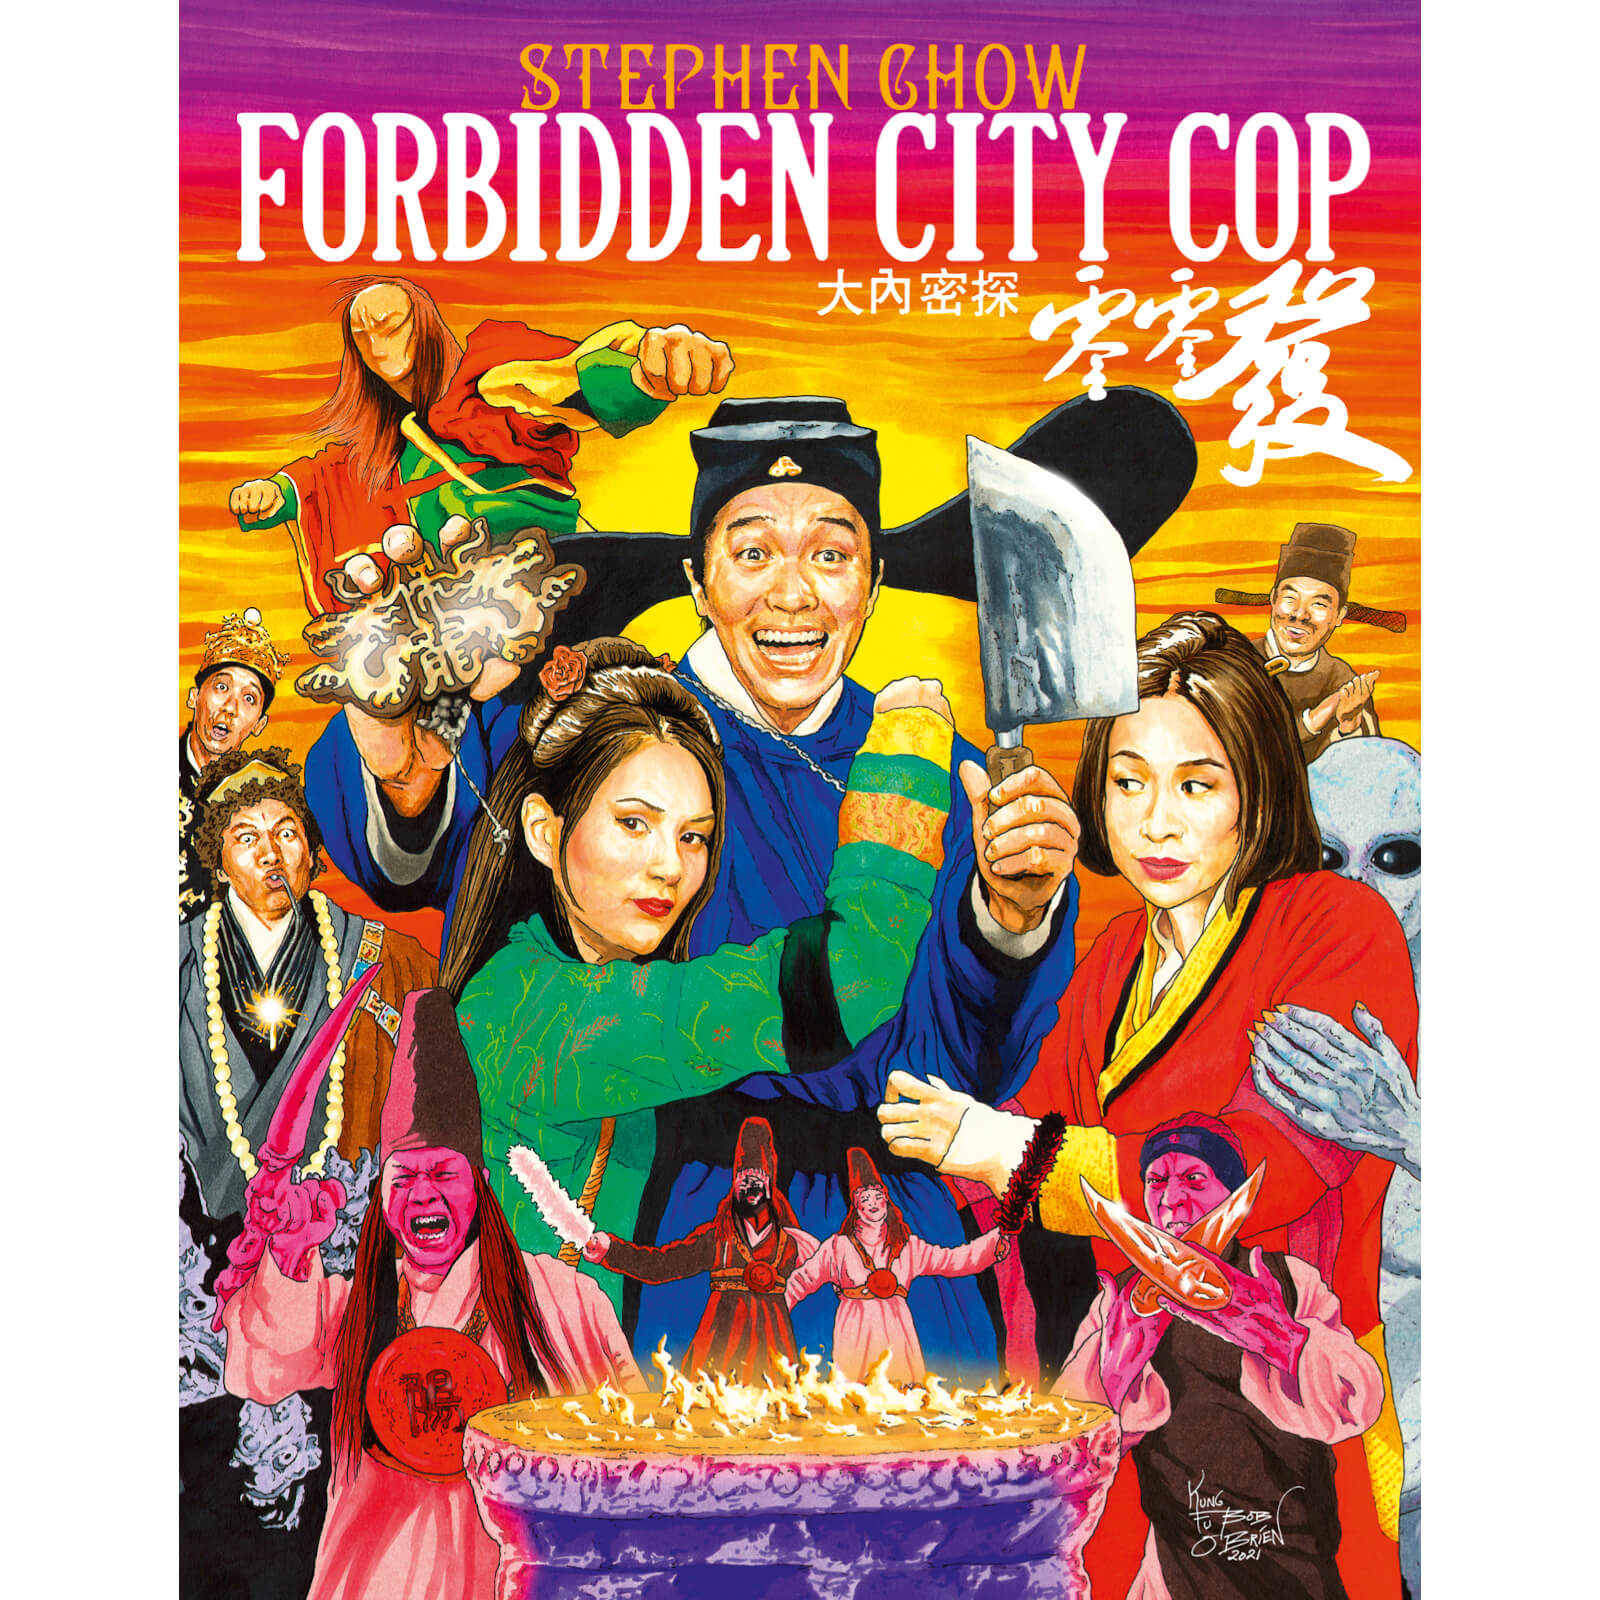 Polizist der Verbotenen Stadt von 88 Films